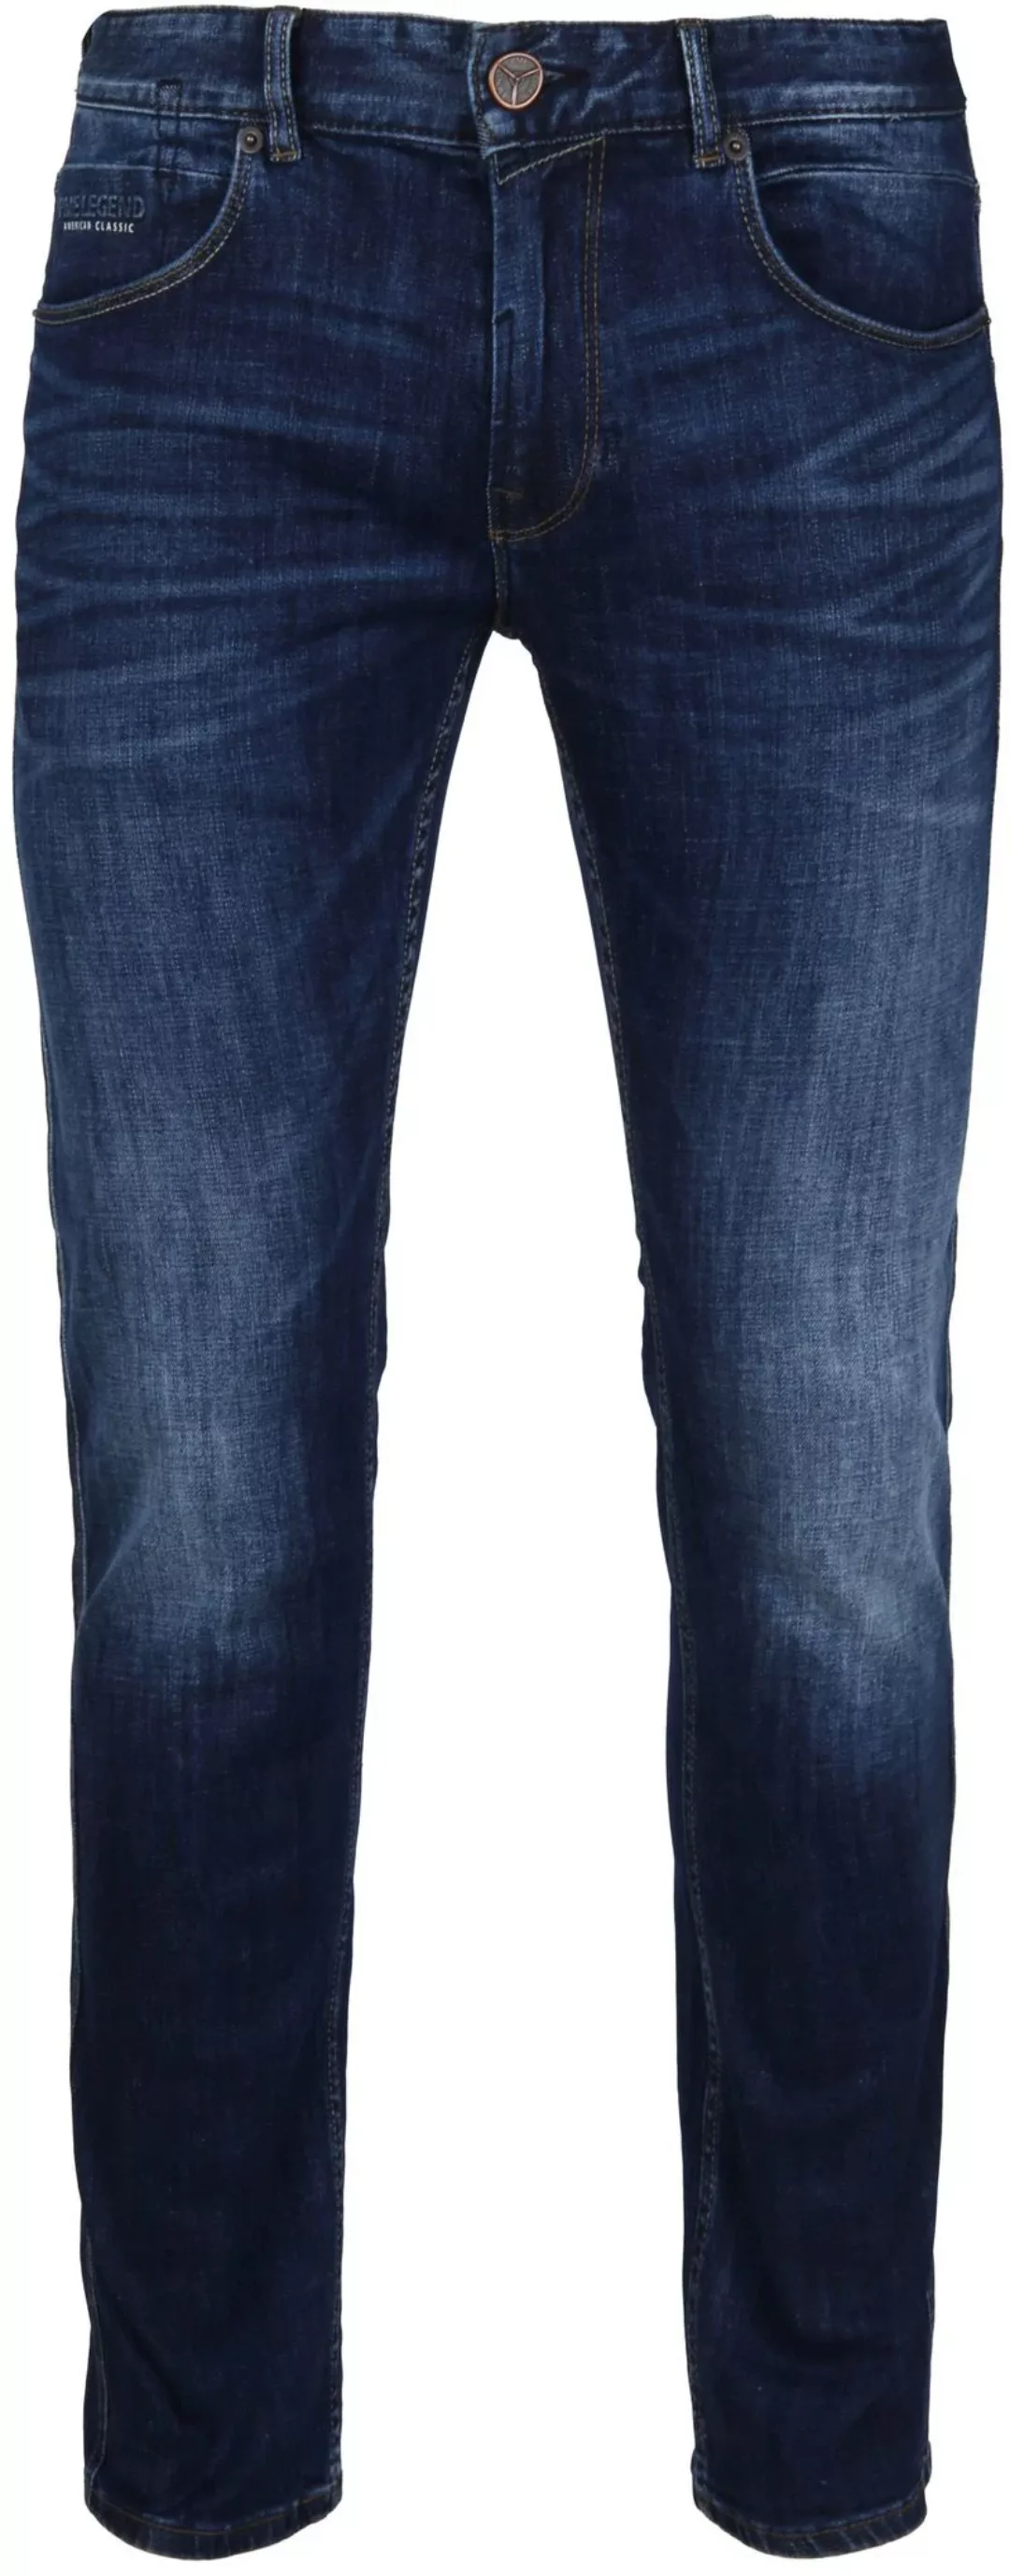 PME Legend Nightflight Jeans Dunkelblau - Größe W 40 - L 32 günstig online kaufen